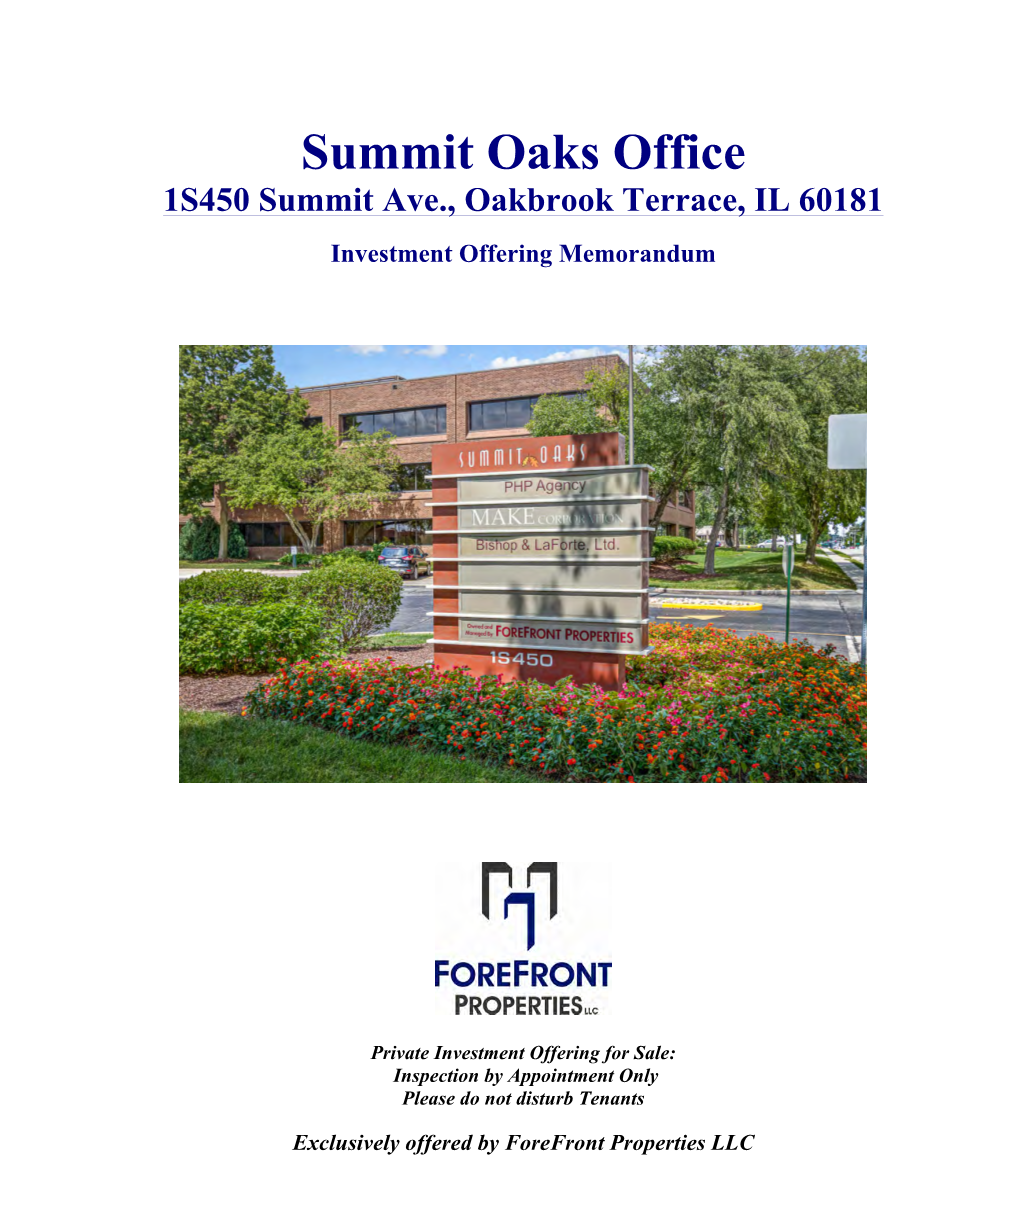 Summit Oaks Office 1S450 Summit Ave., Oakbrook Terrace, IL 60181